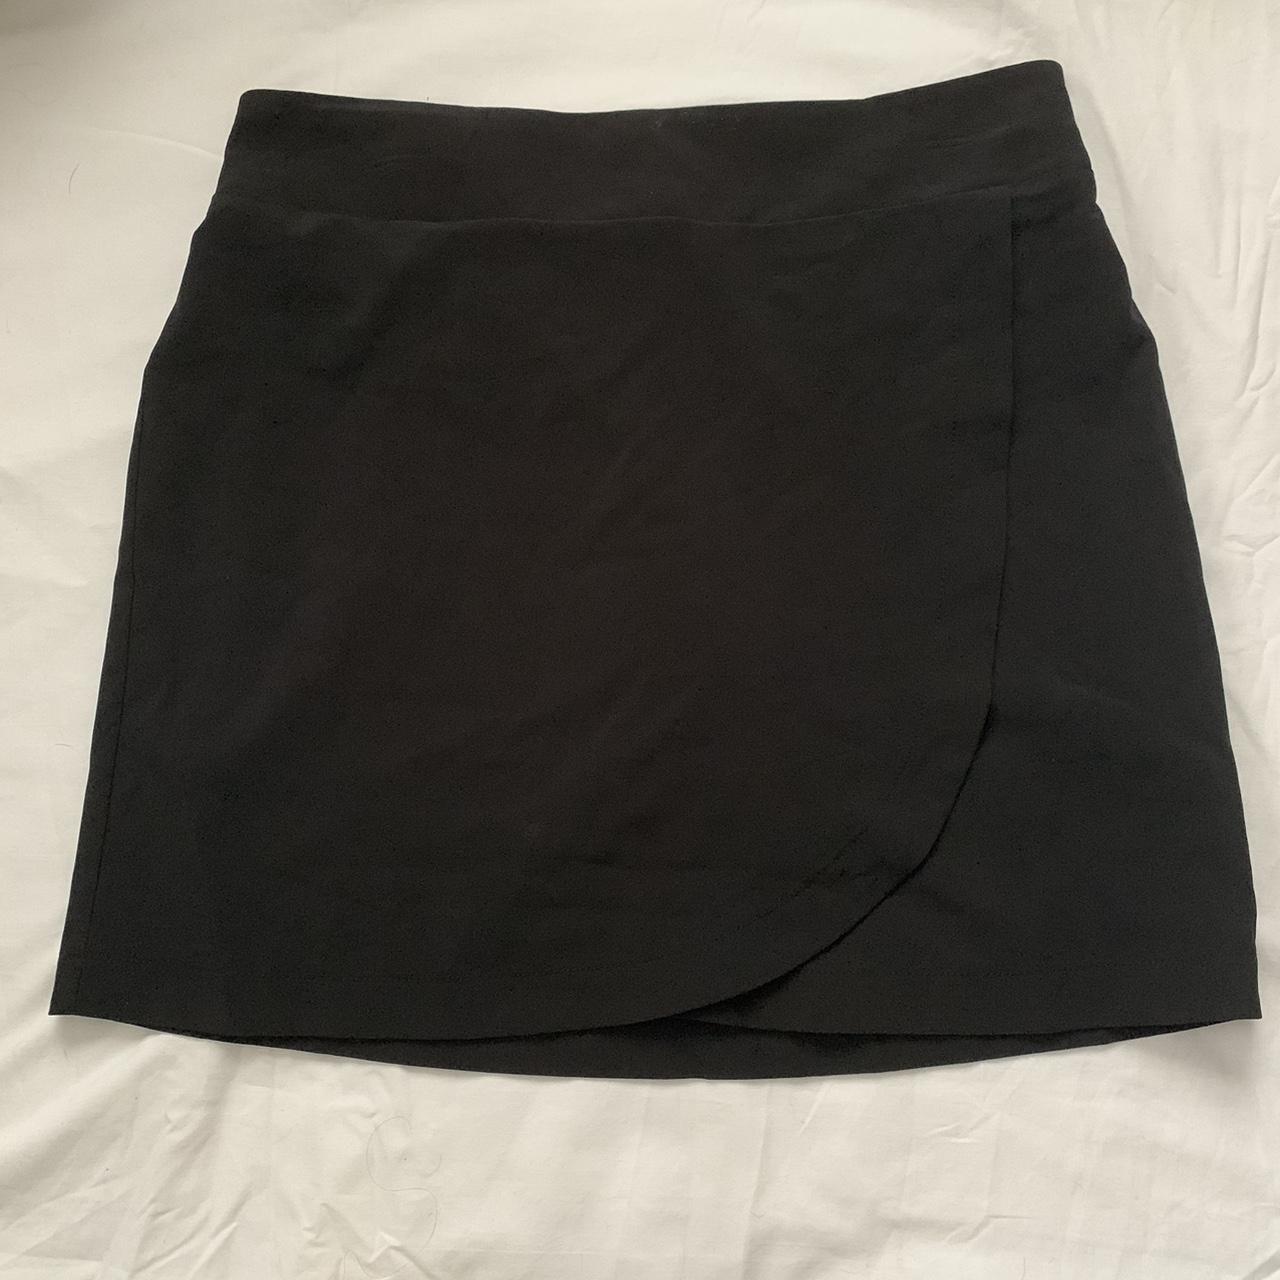 Jockey Women's Black Skirt (2)